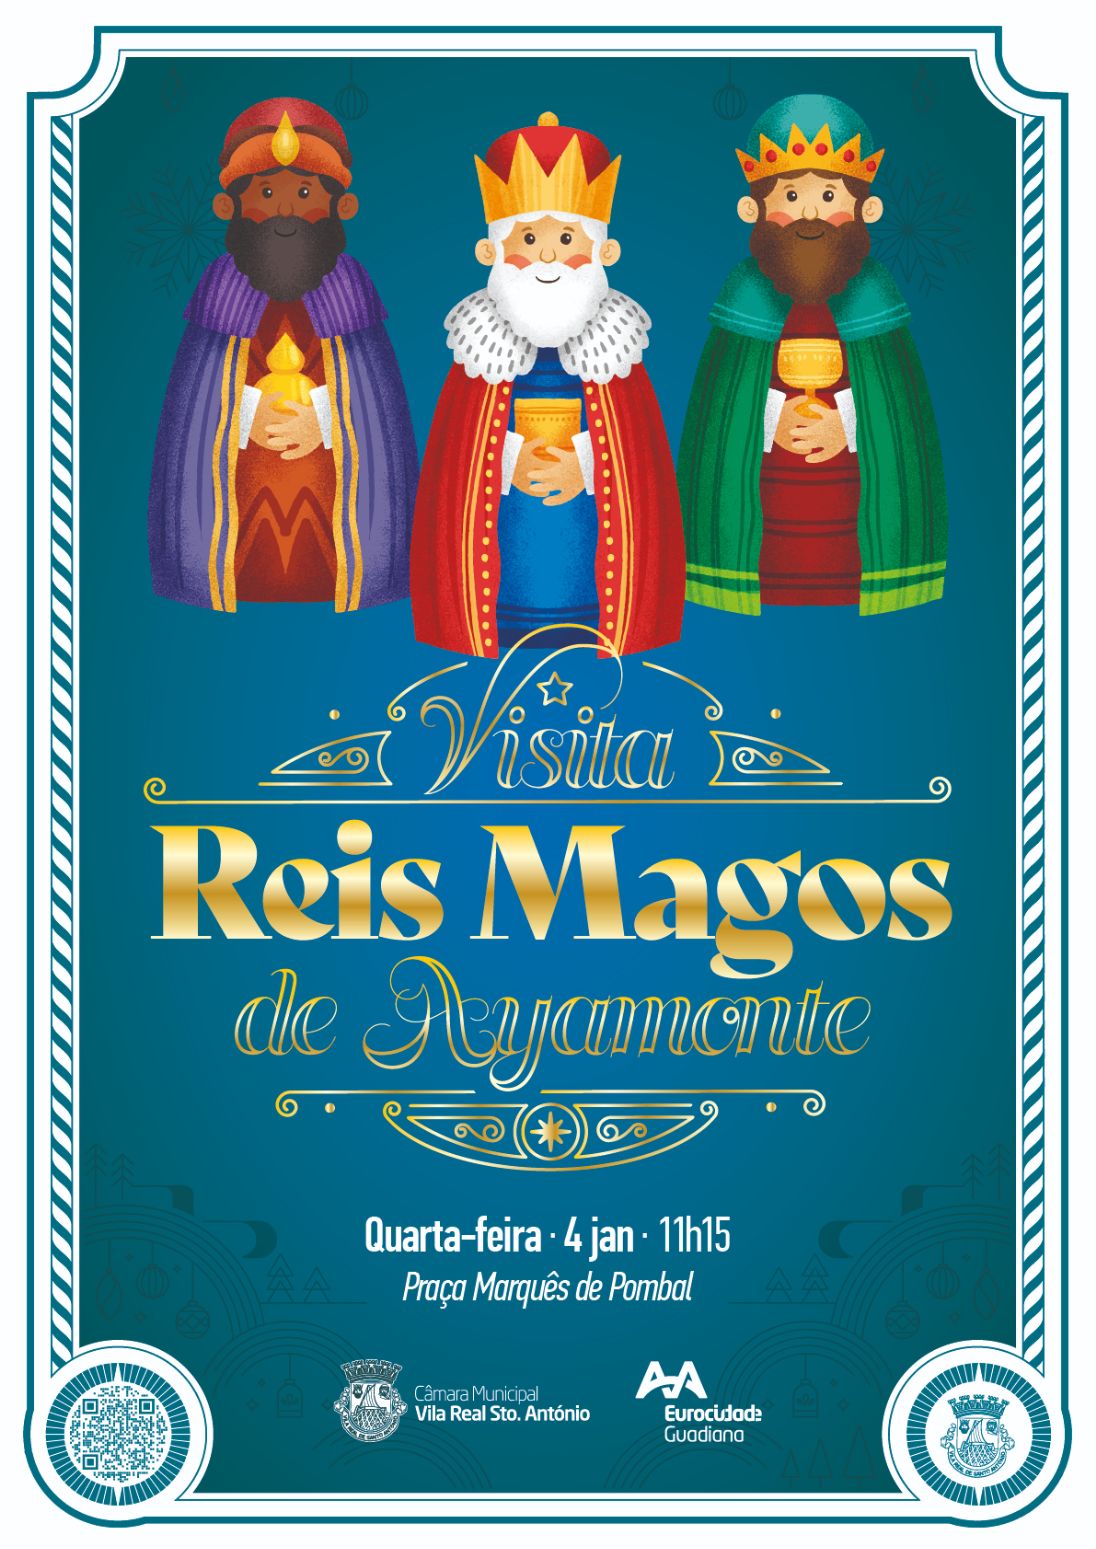 Reis Magos de Ayamonte recriam tradição em Vila Real de Santo António